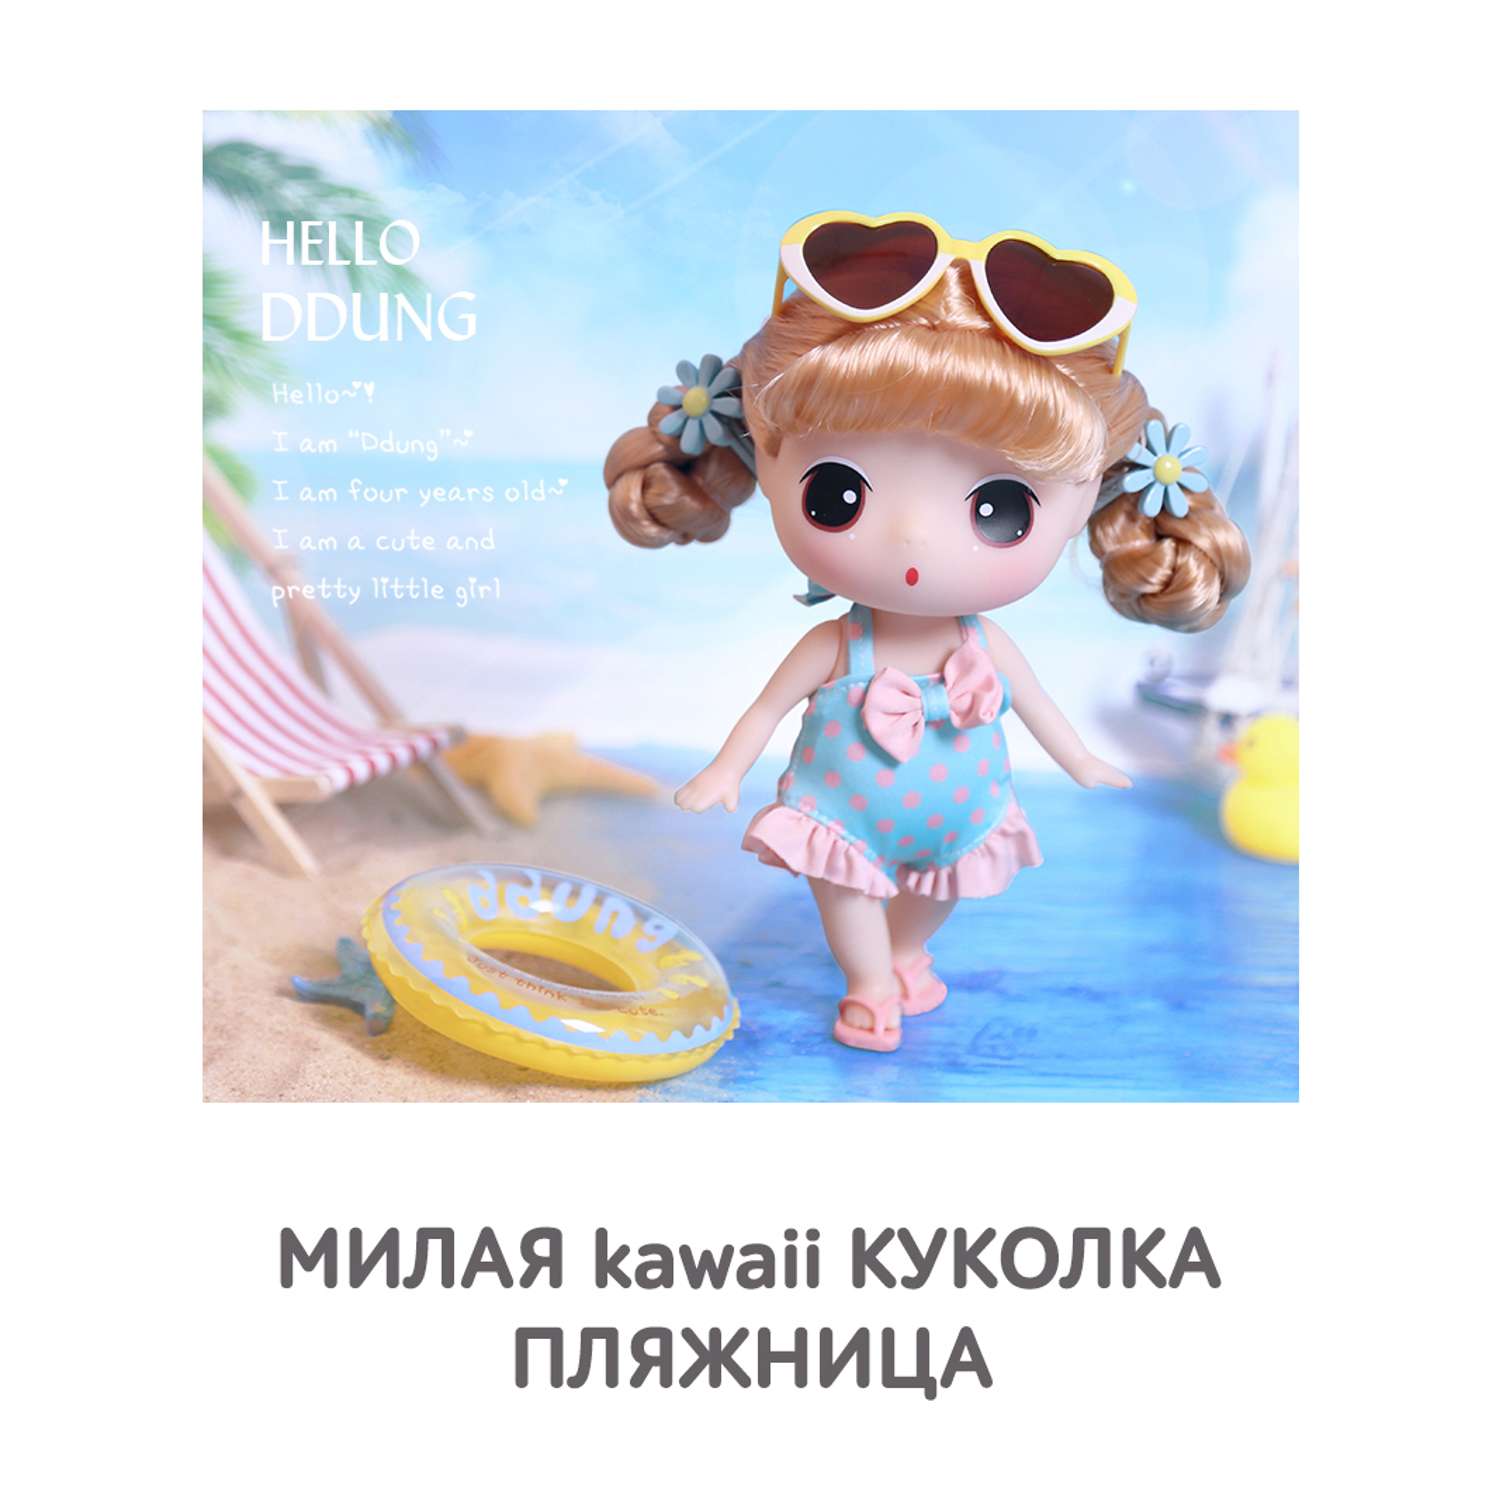 Кукла DDung Пляжница 18 см корейская игрушка аниме FDE1831 - фото 2